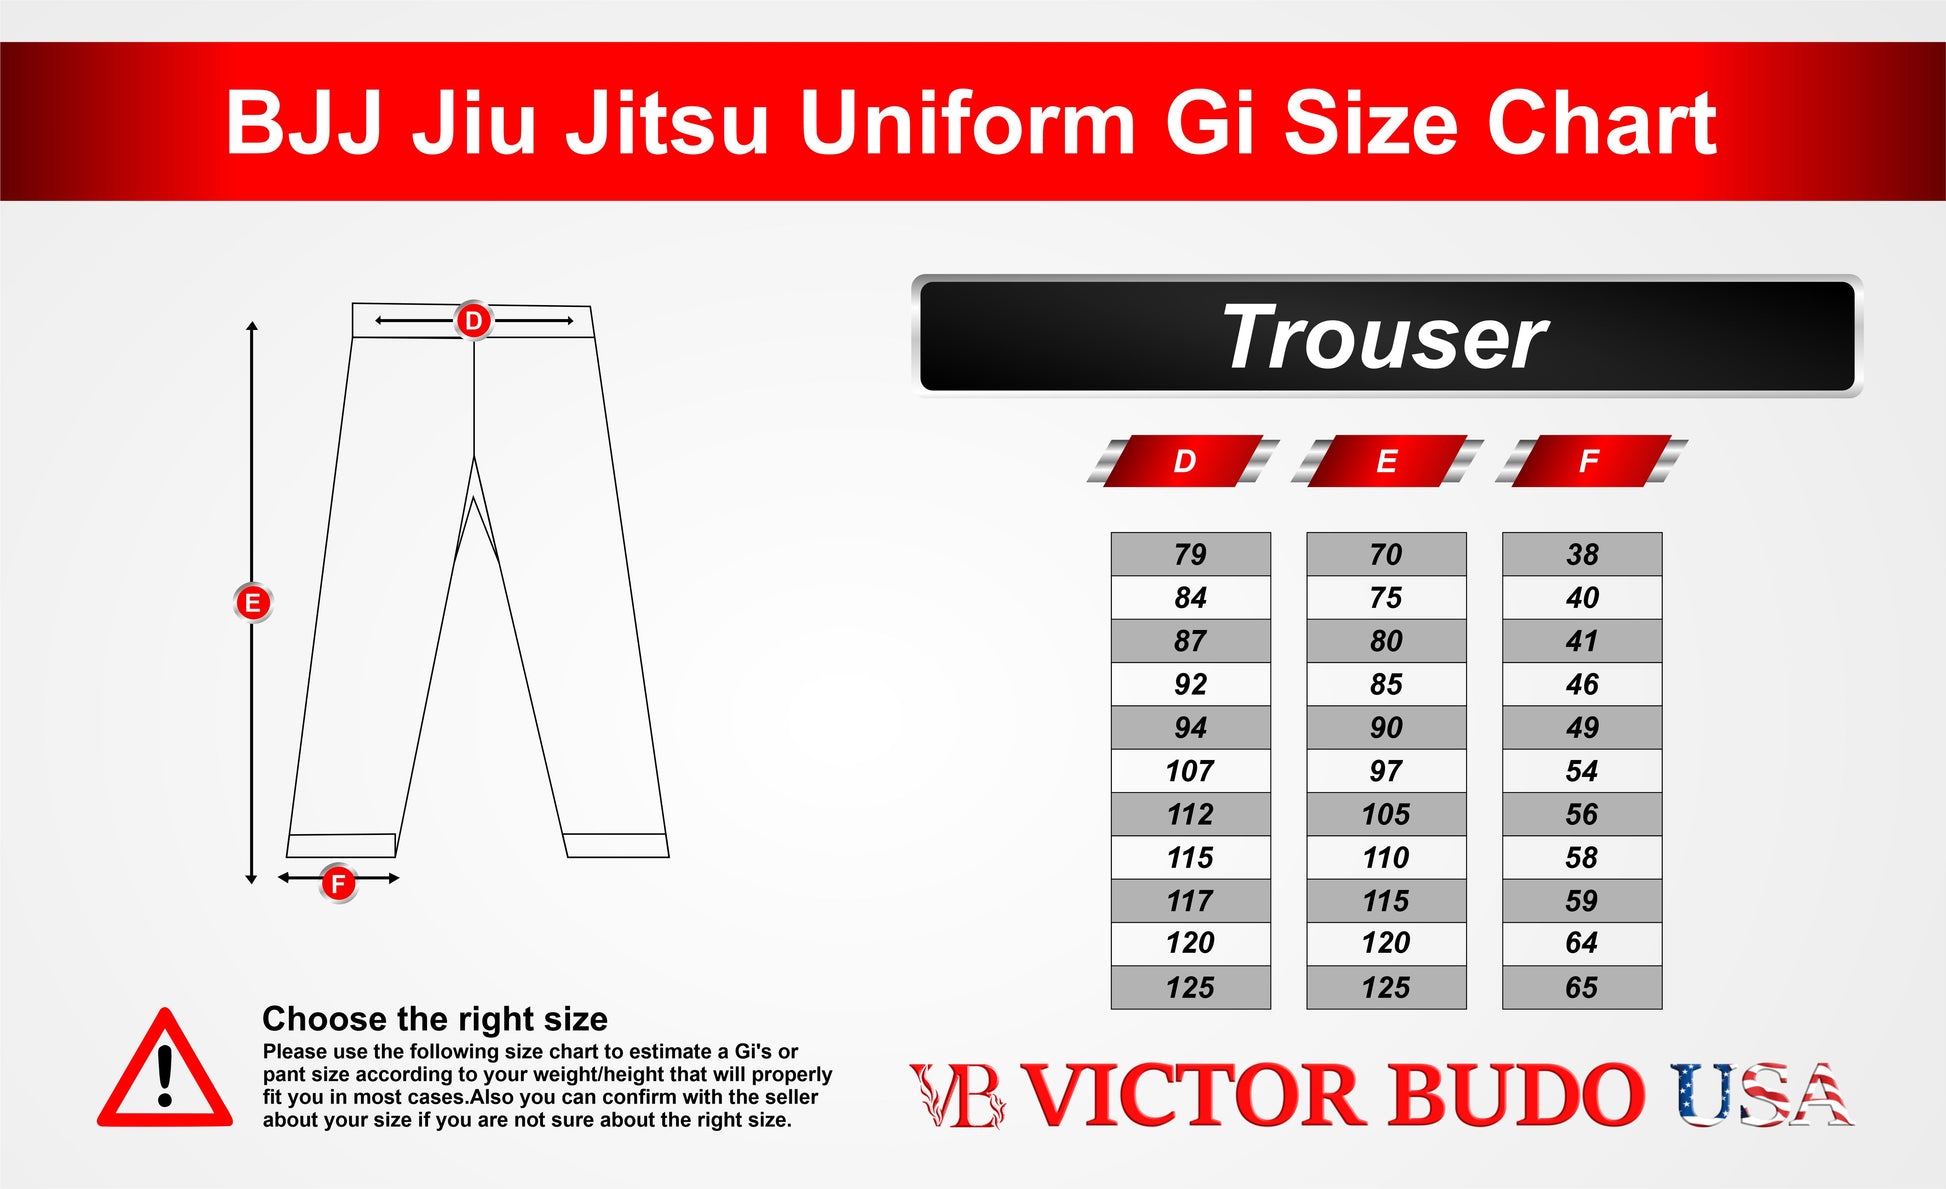 bjj-brand-jiu-jitsu-uniforms-near-me-50-gsm-size-chart-jacket